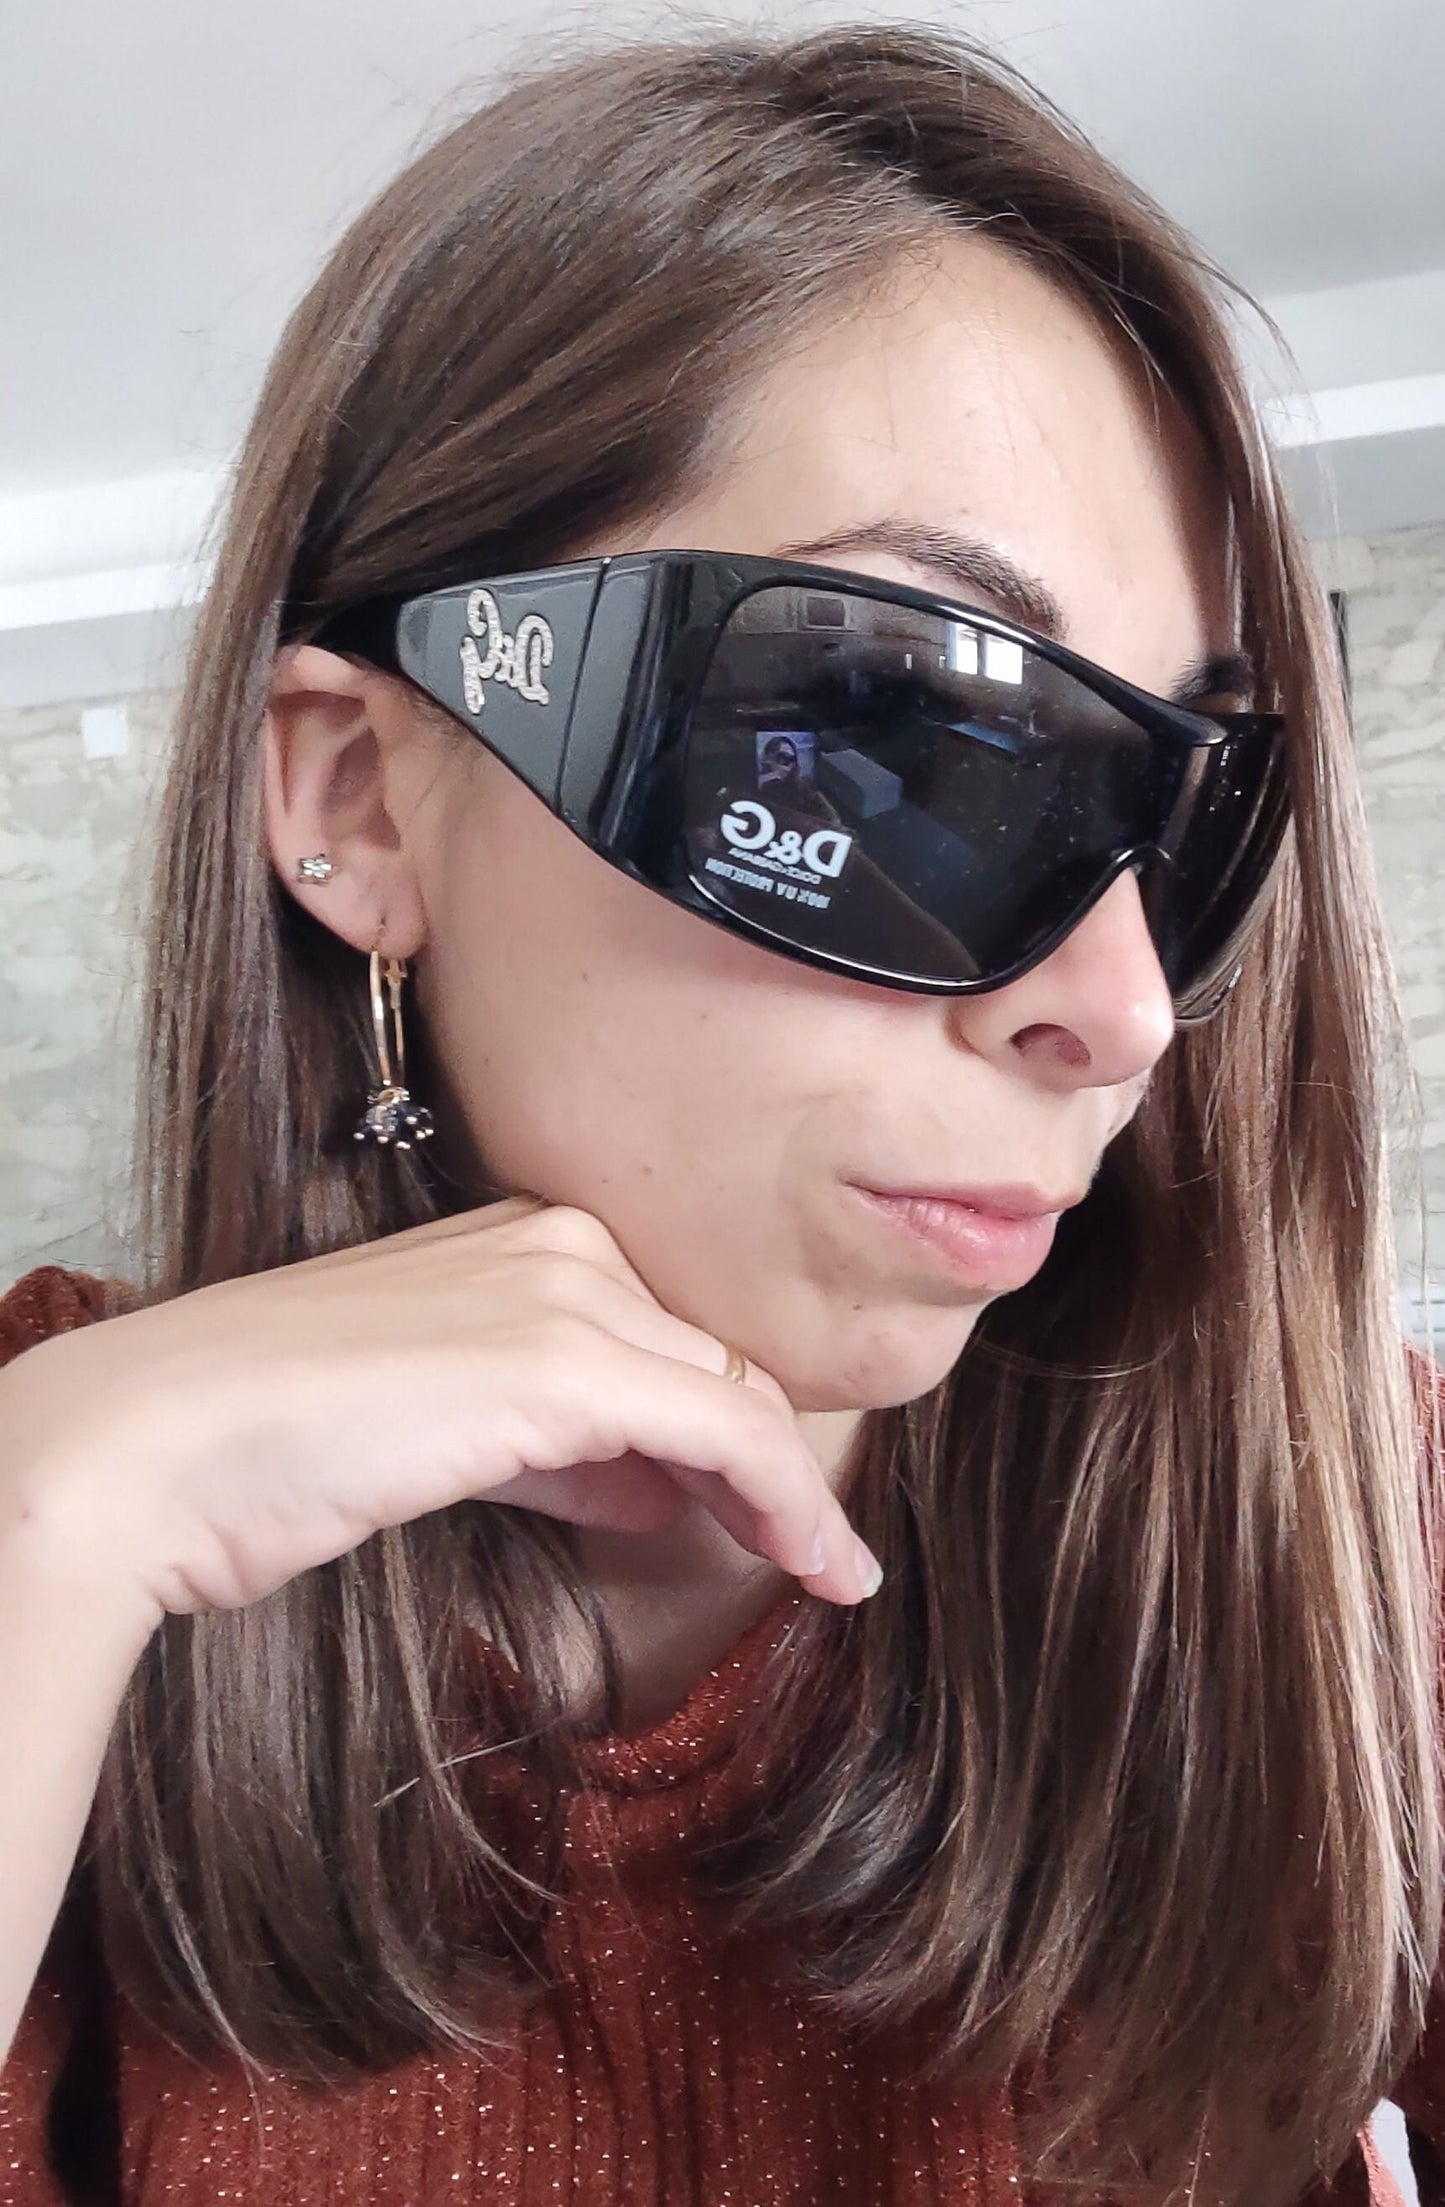 Dolce e Gabbana 8033 B Y2K occhiali da sole vintage NOS occhiali gafas wrap shield